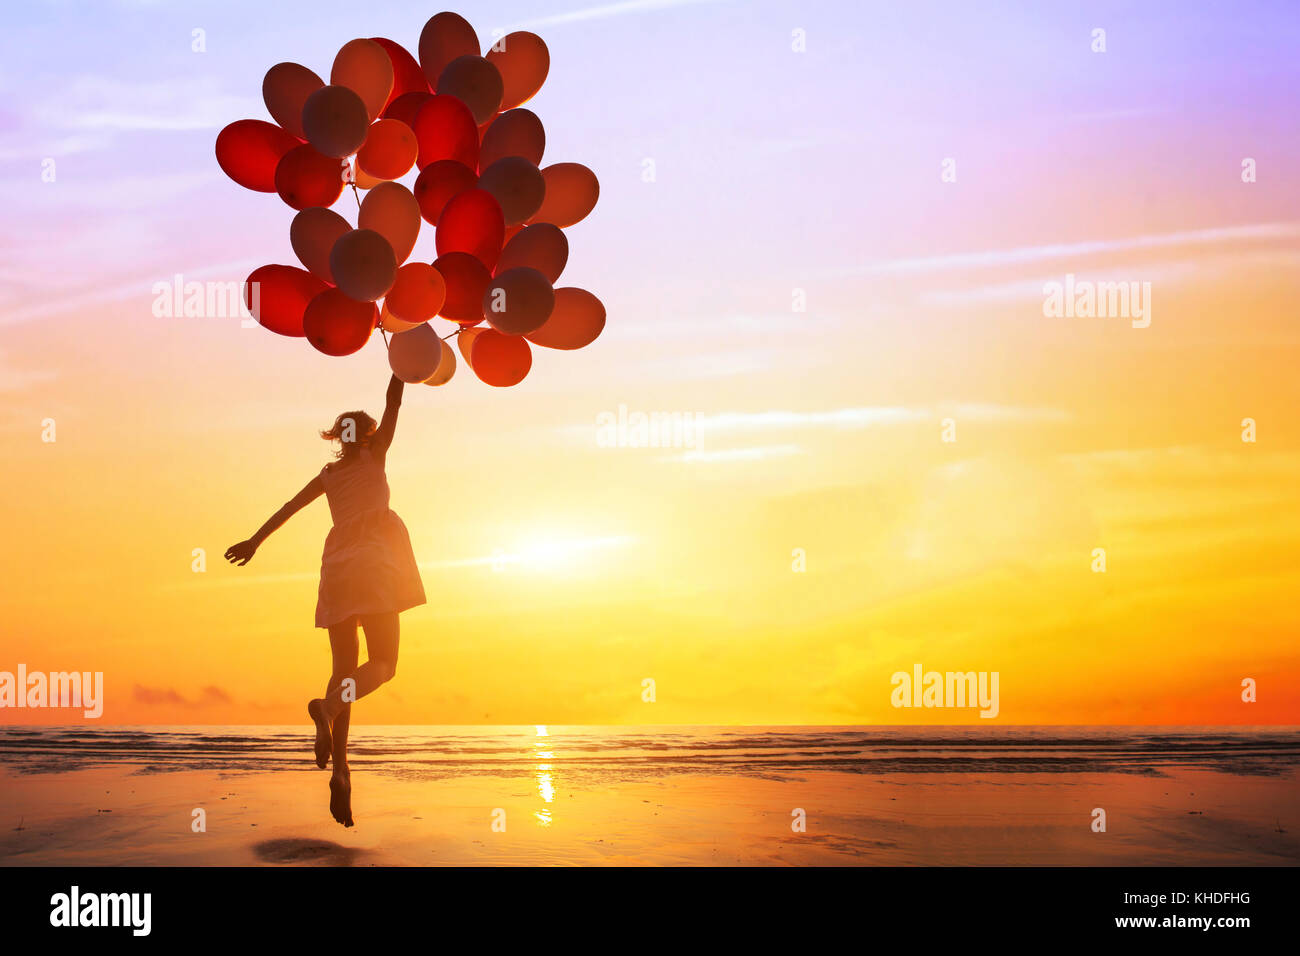 La felicidad o el concepto de ensueño, silueta de mujer feliz saltando con globos multicolores al atardecer en la playa Foto de stock